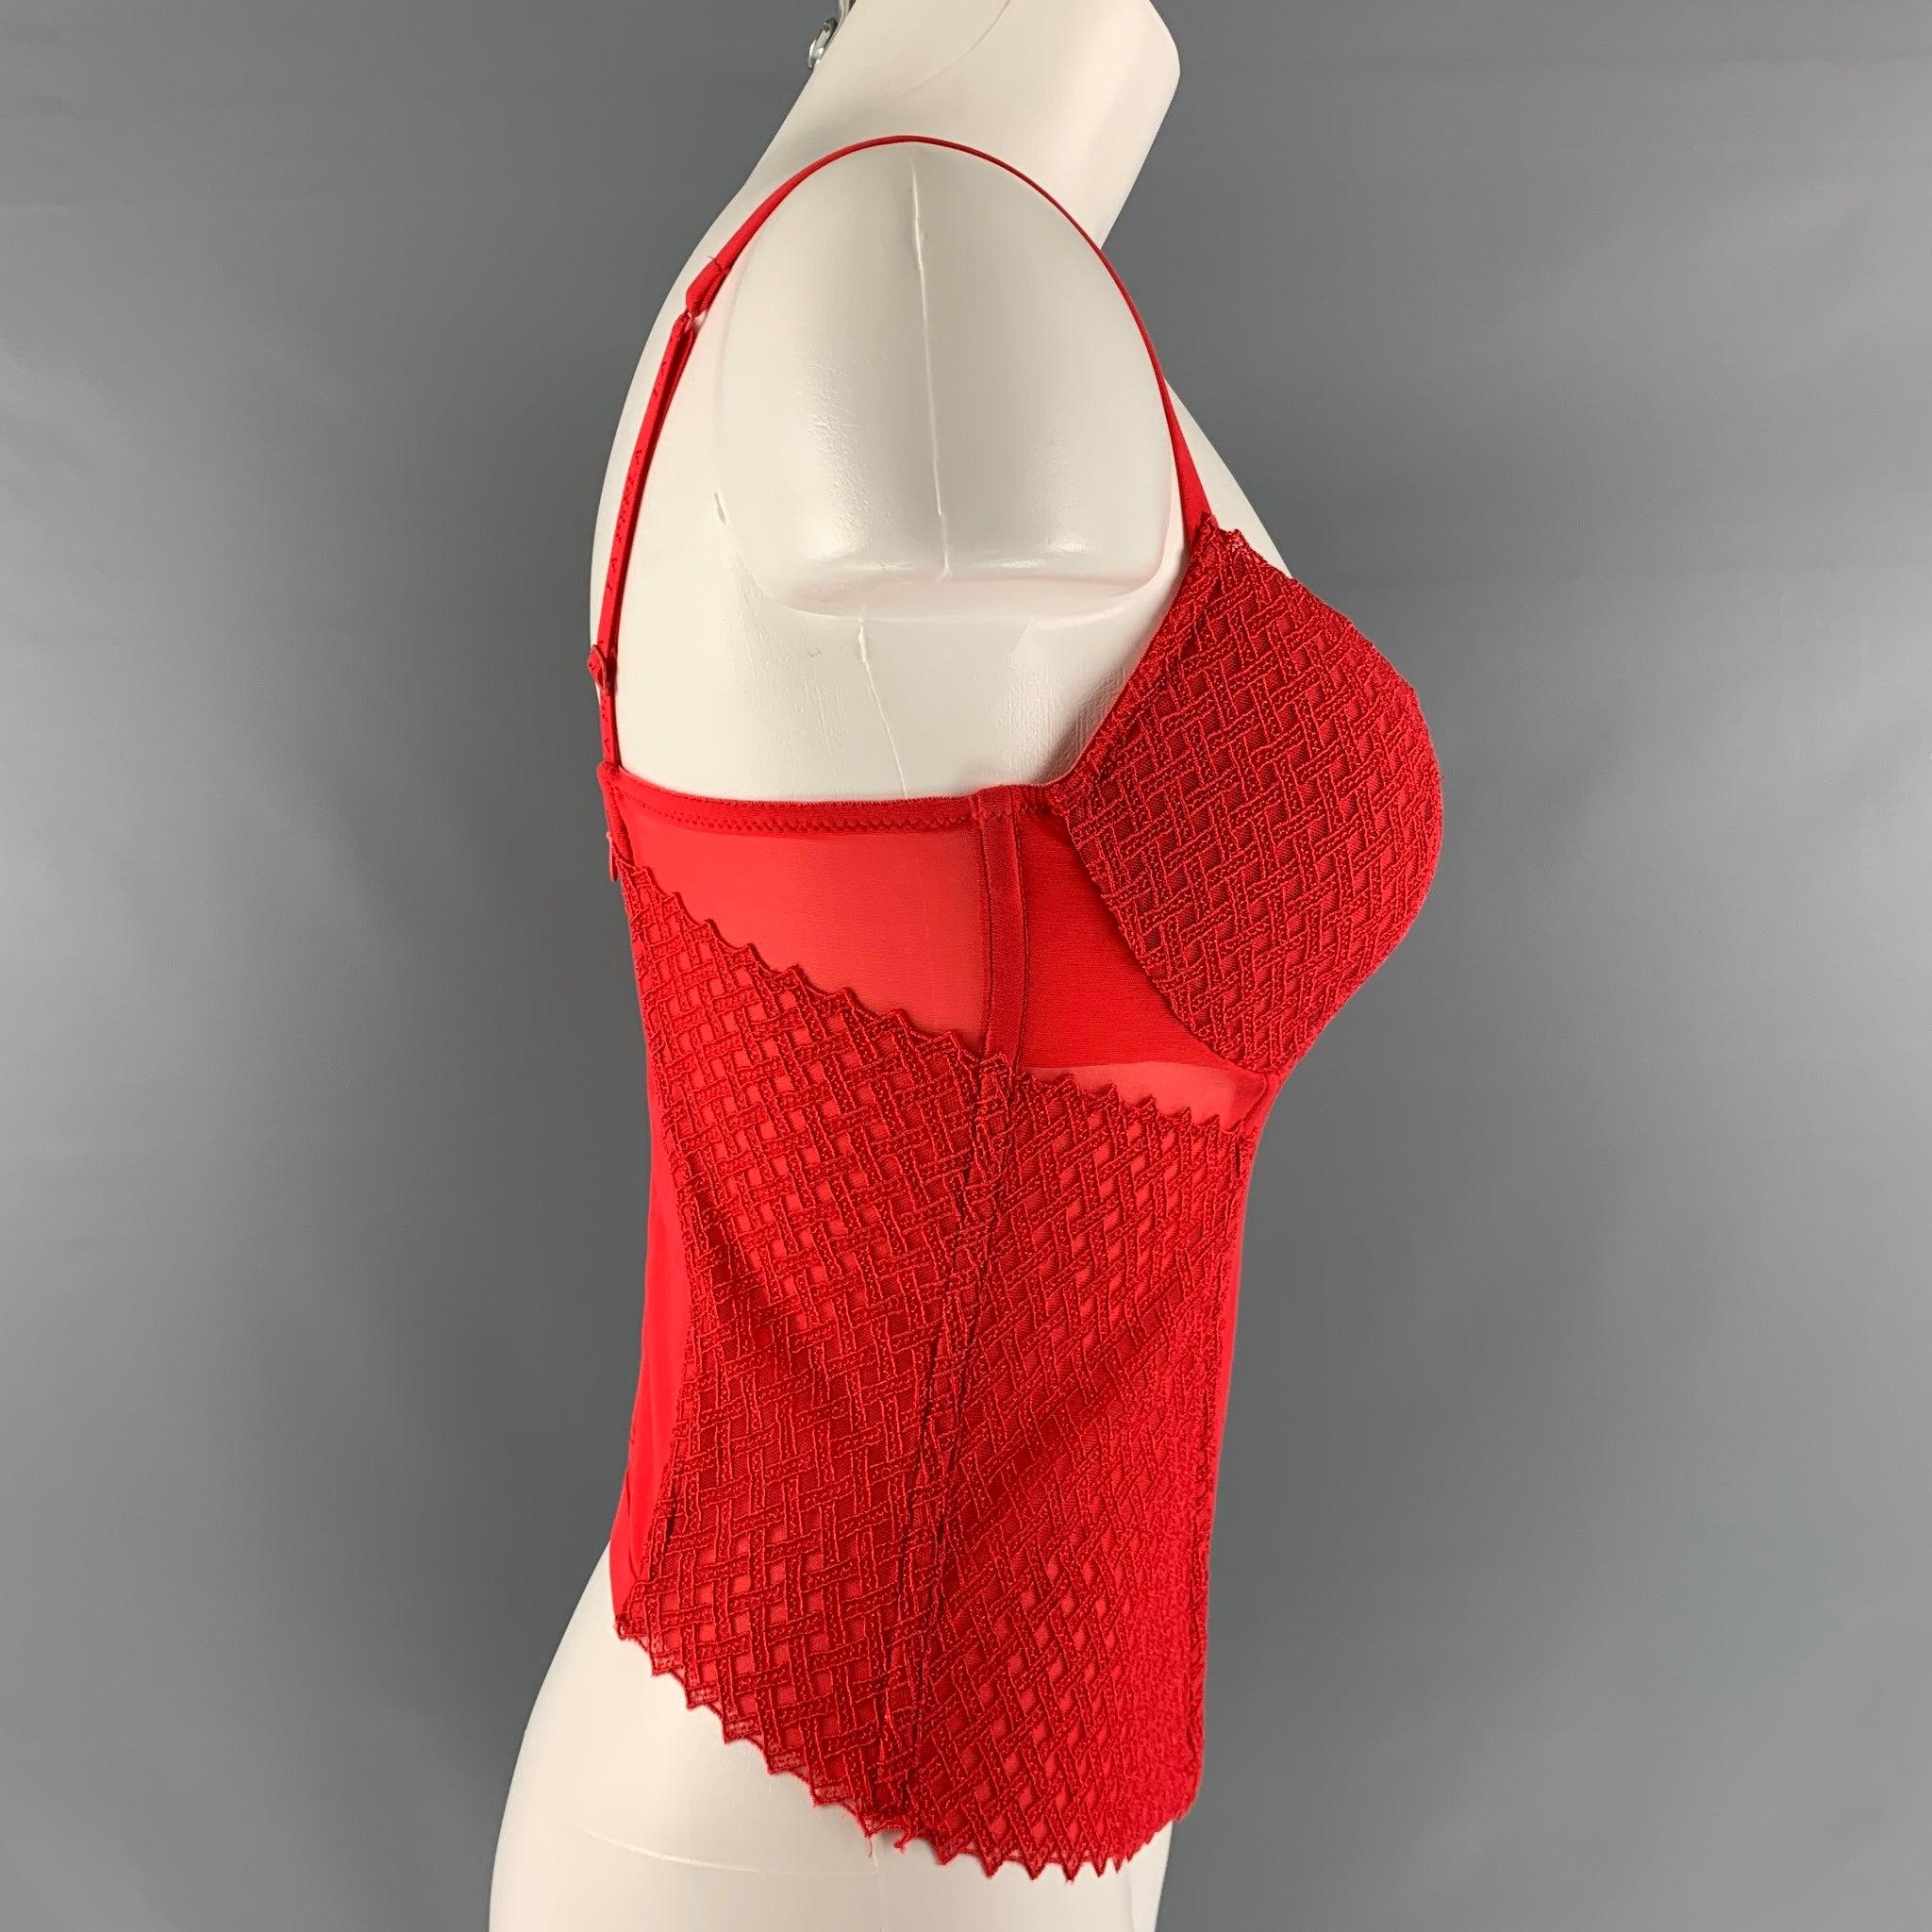 La robe-corset LA PERLA est réalisée en polyamide rouge avec une texture mixte et une fermeture à glissière au centre du dos.Excellent état d'occasion. 

Marqué :  3 IT 

Mesures : 
 Poitrine : 28 pouces Longueur : 13 pouces 
 
 
 
 
Référence Sui